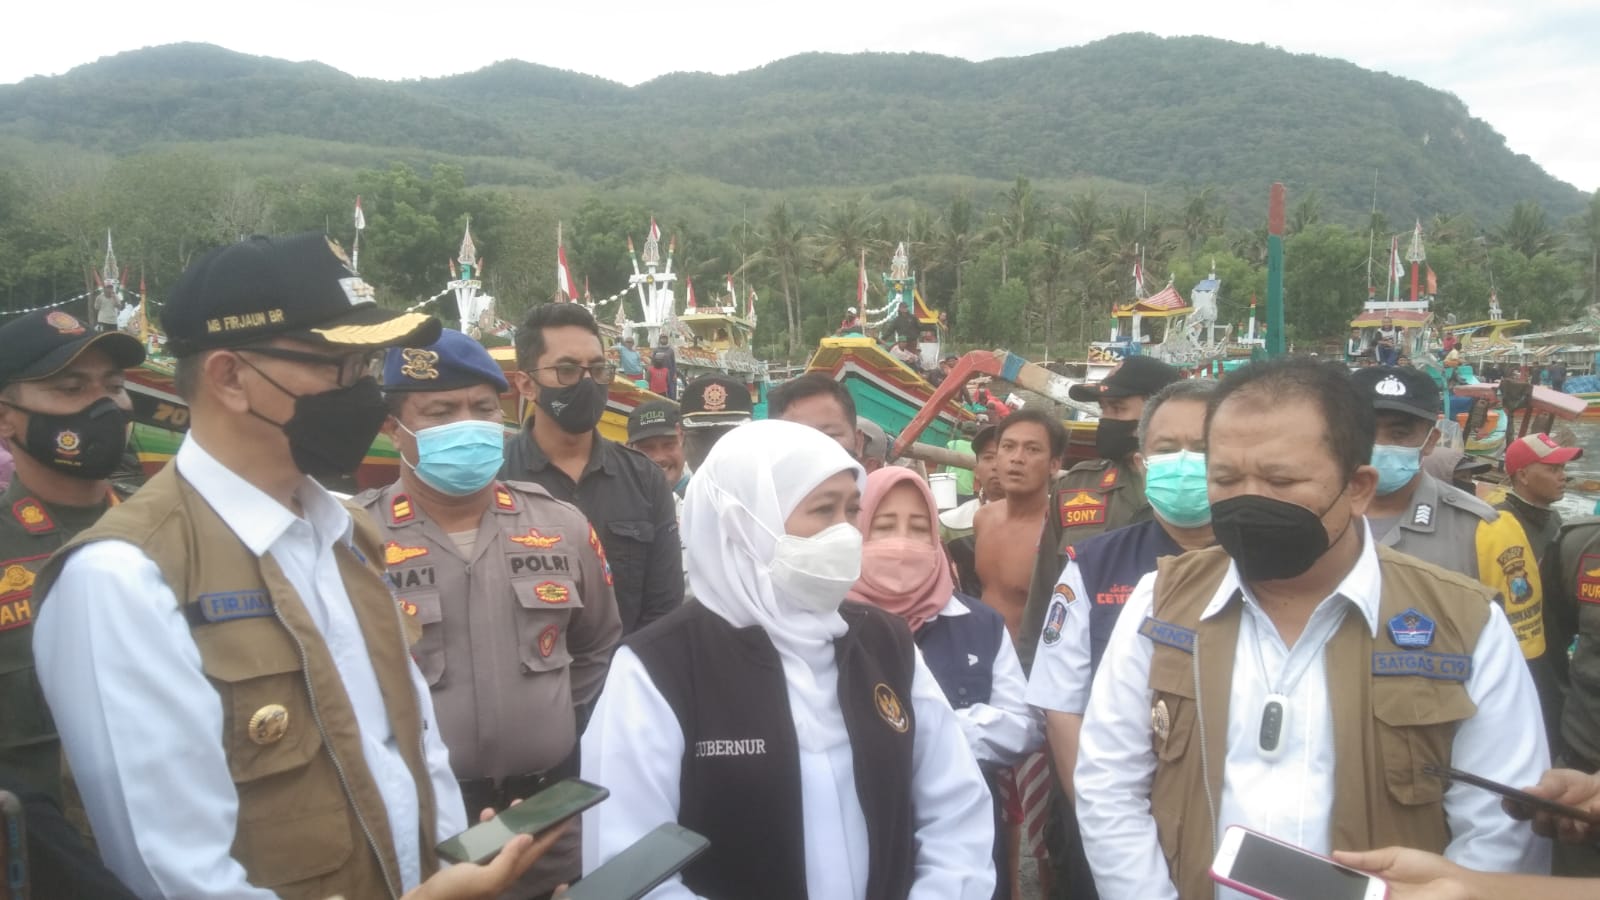 Gubernur Jawa Timur dan Bupati Jember Datang ke Desa Puger Dengan Menaiki Helikopter